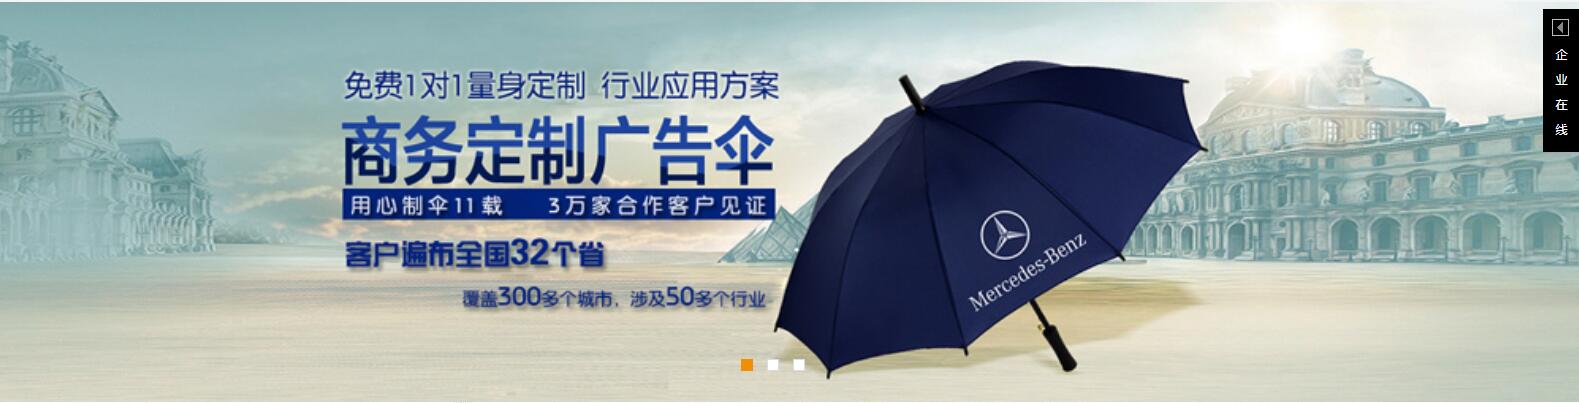 铝合金雨伞、湘潭雨伞厂、嘉鸿太阳伞订制